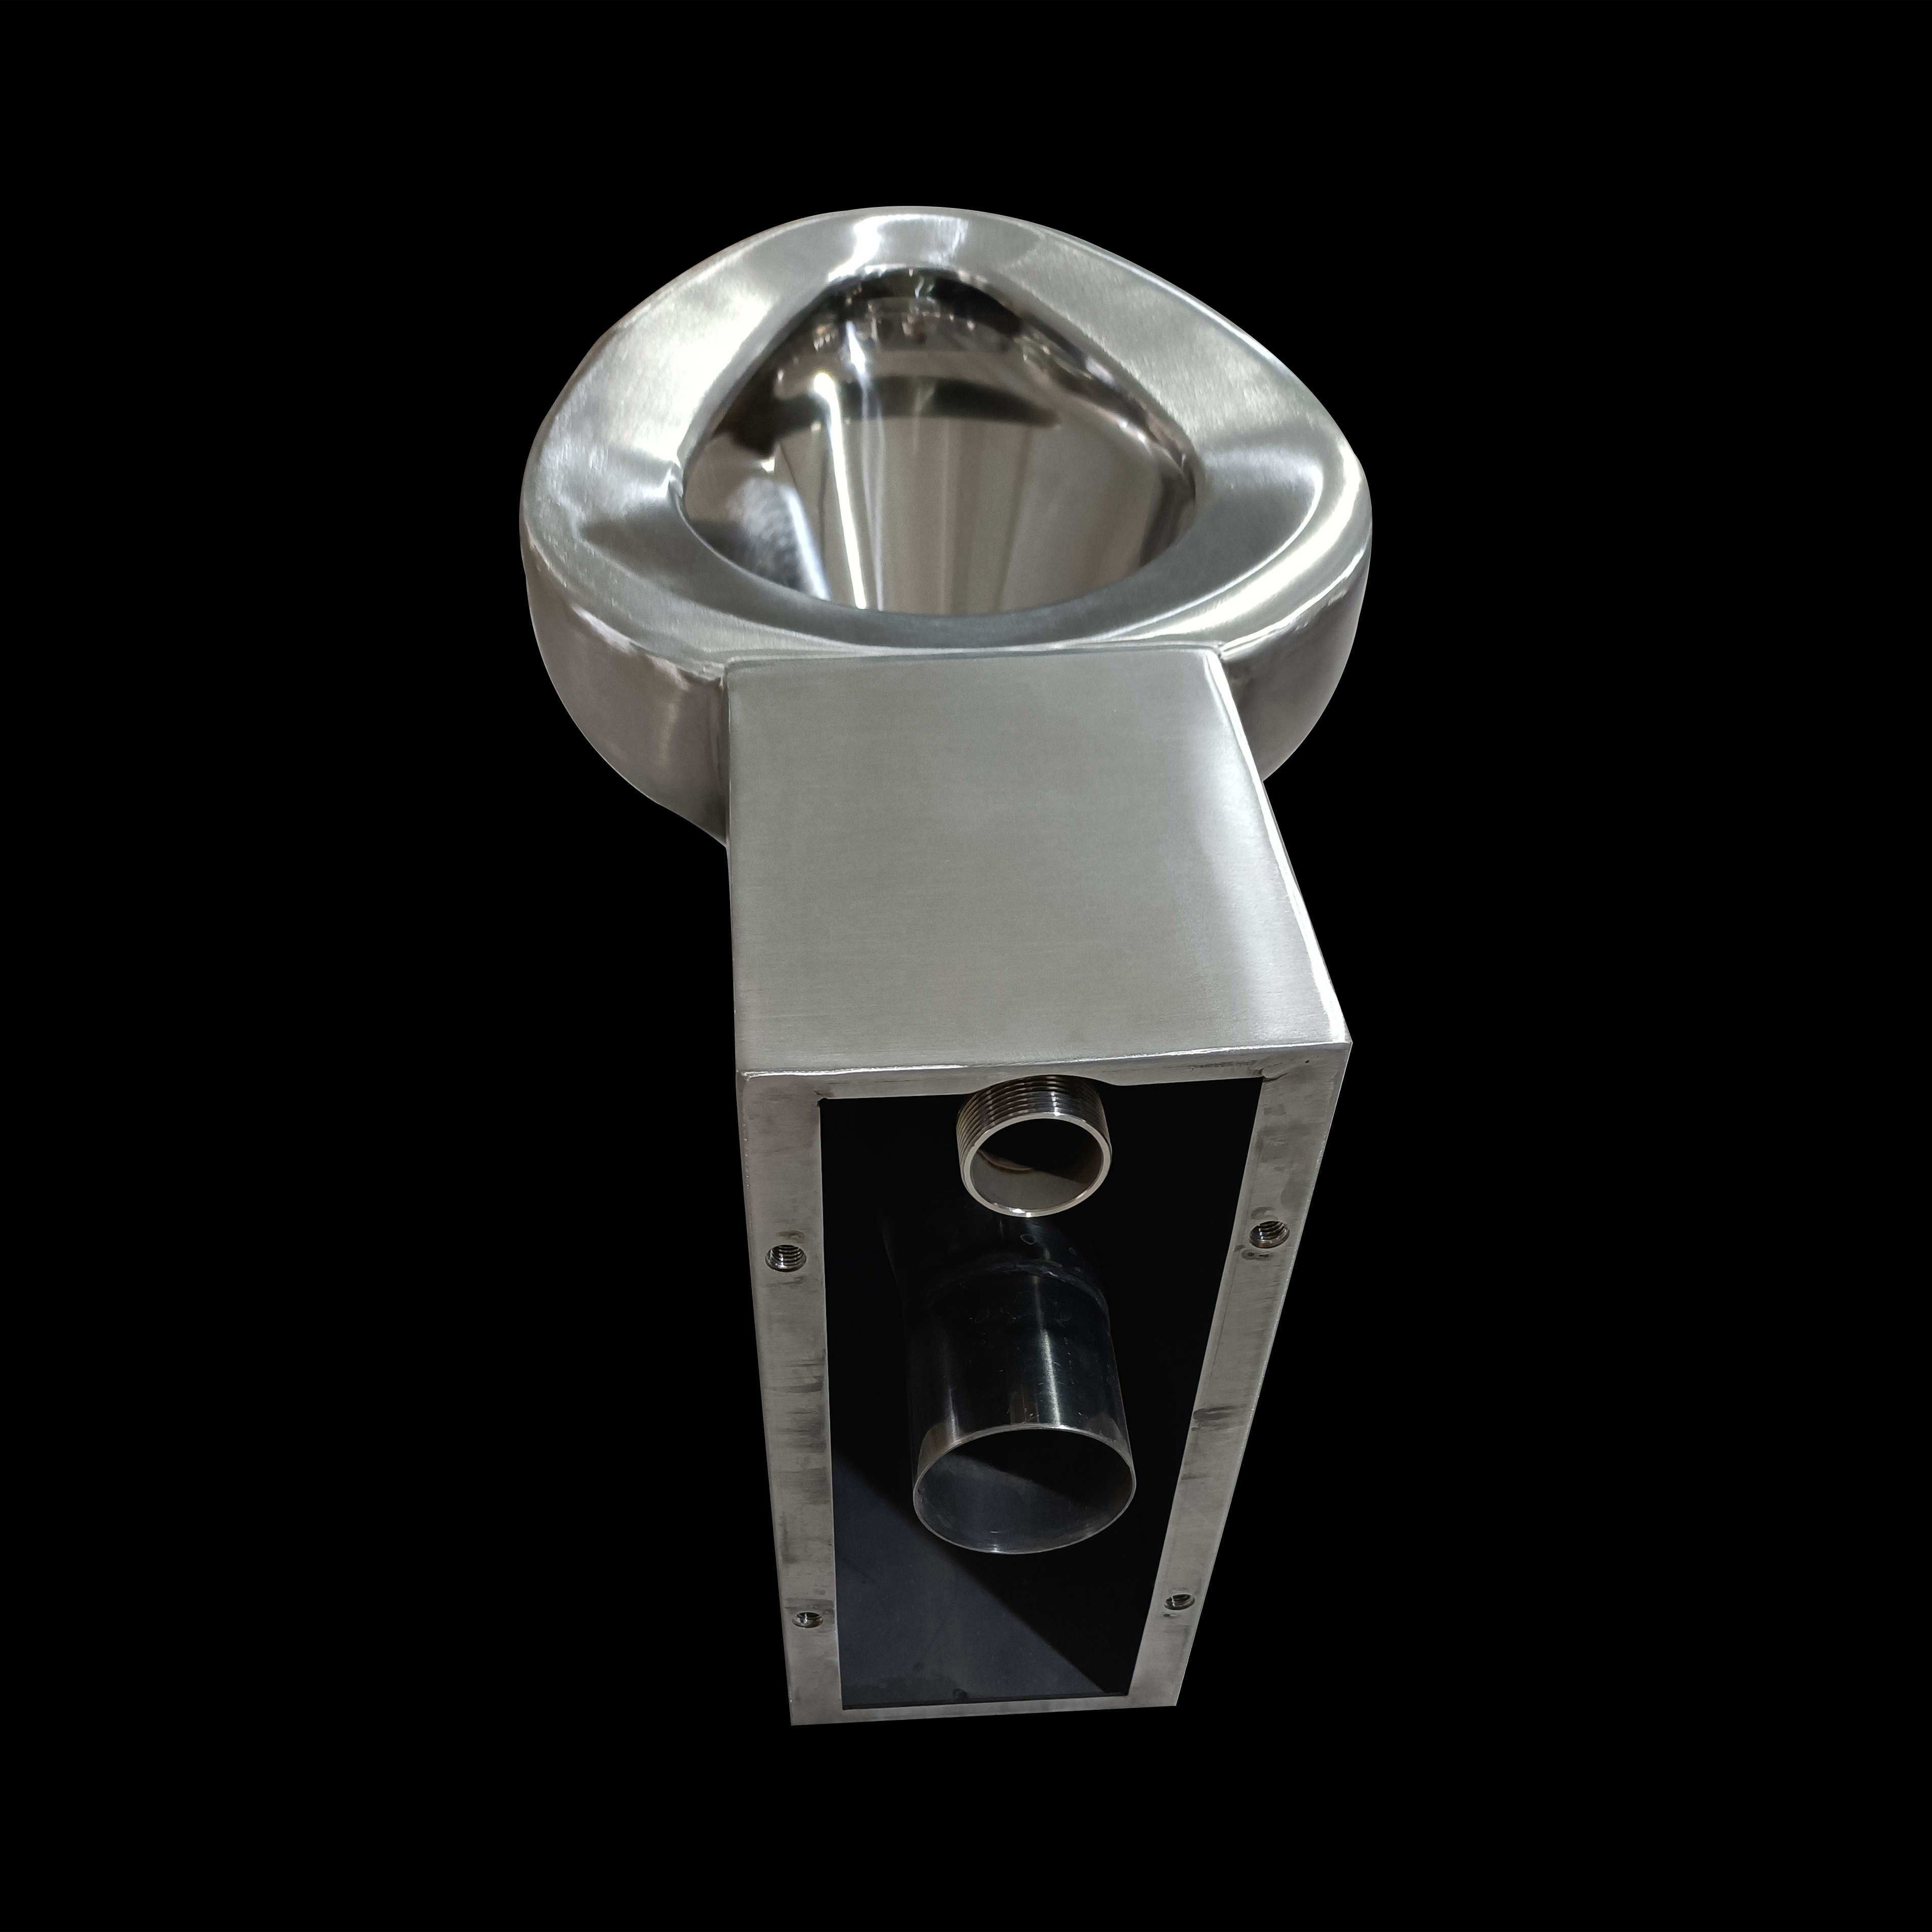 Vaso WC per montaggio a pavimento in acciaio inossidabile a risparmio idrico da 4,8 litri